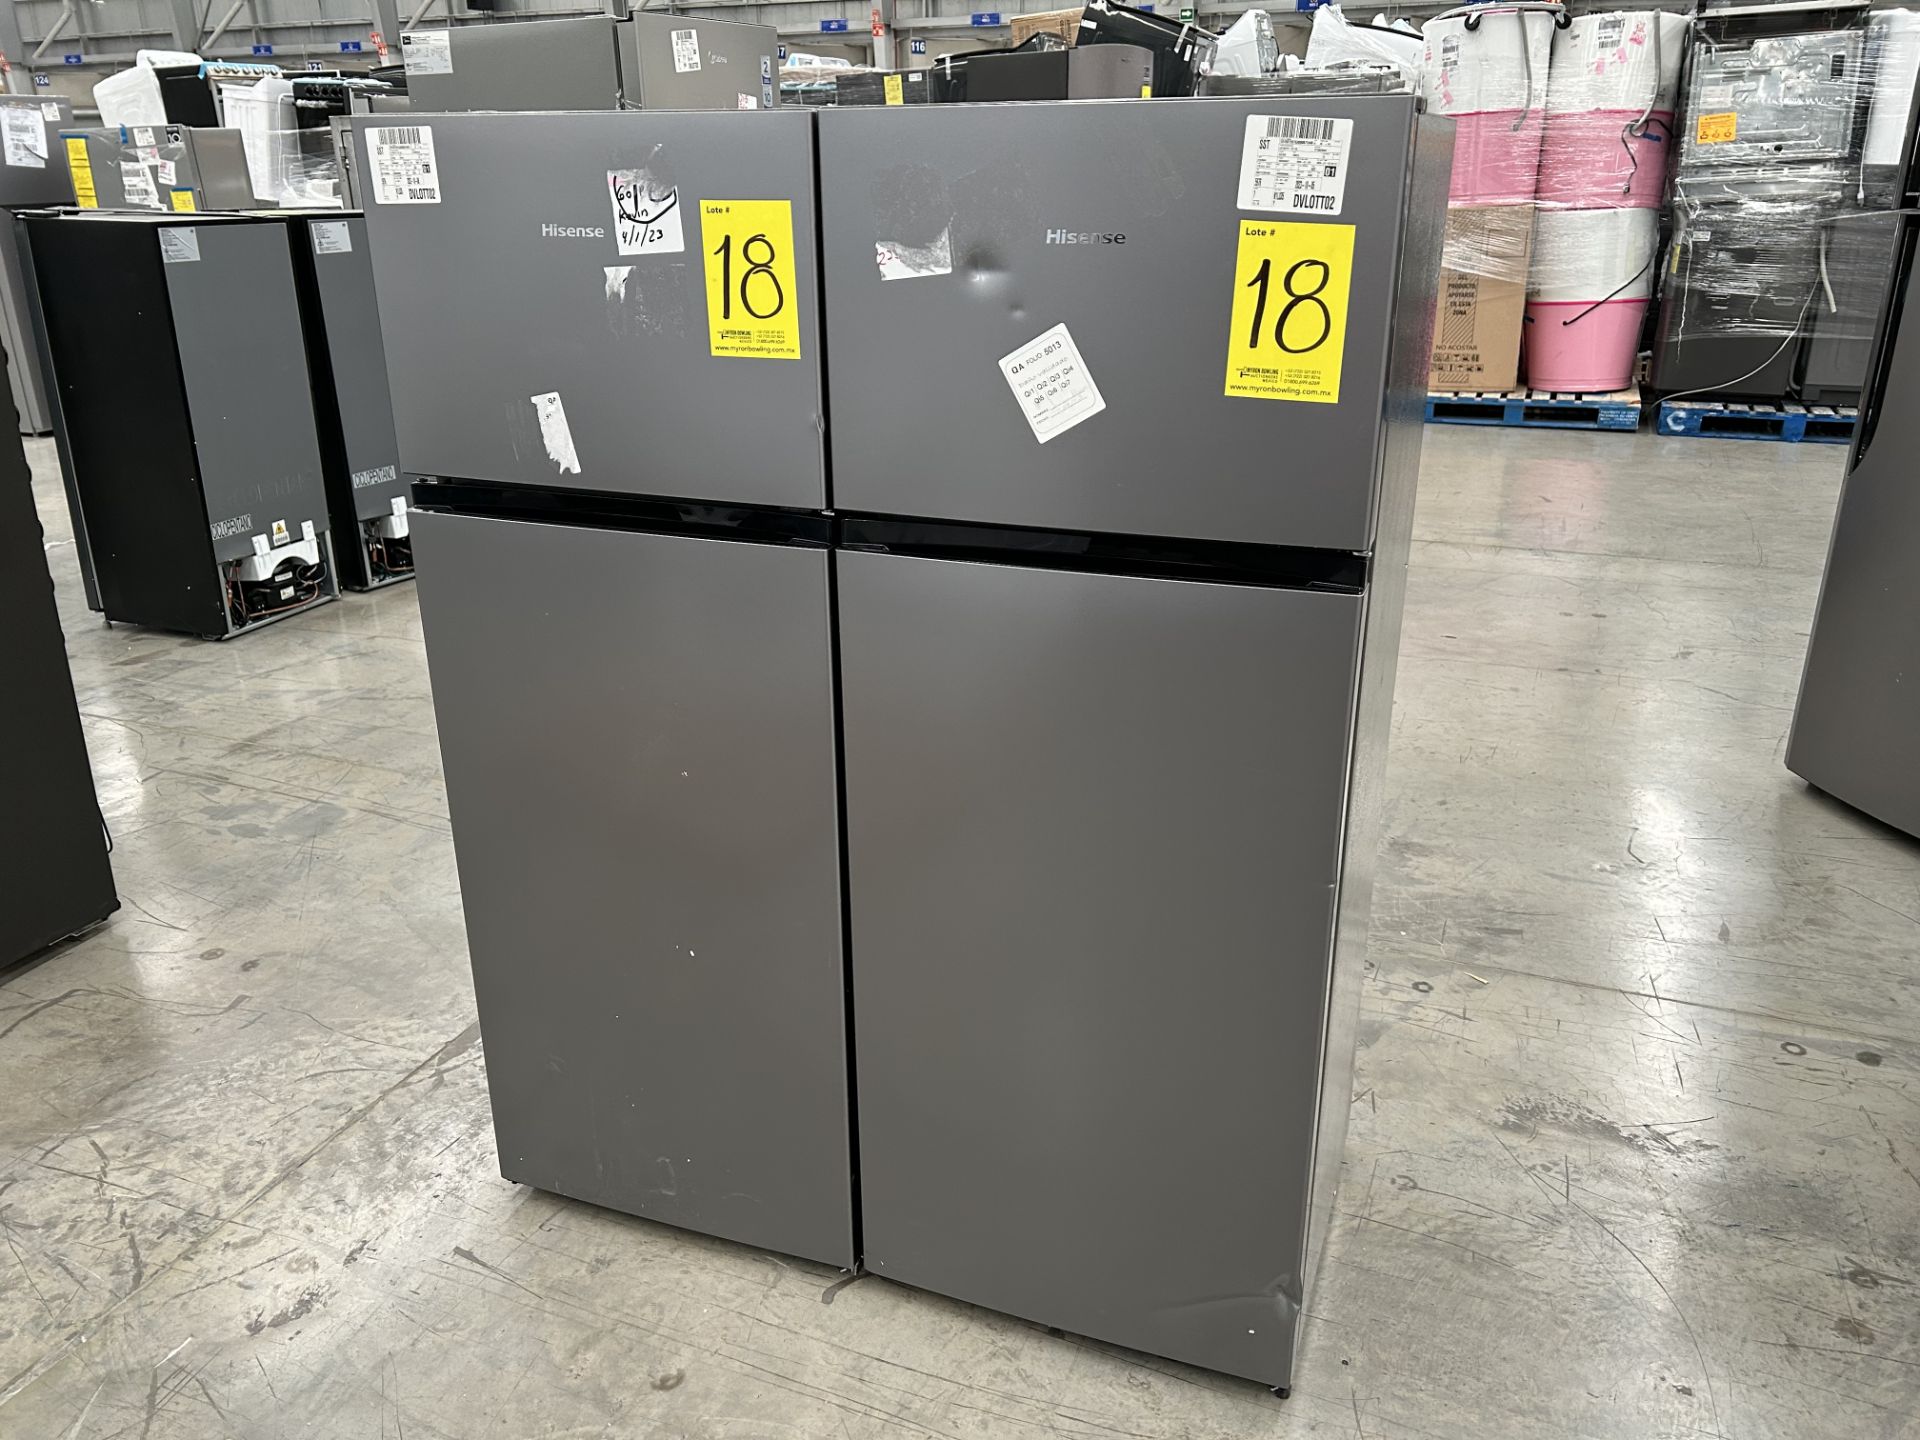 Lote de 2 Refrigeradores contiene: 1 Refrigerador Marca HISENSE, Modelo RT80D6AGX, Serie 20358, Col - Image 2 of 6